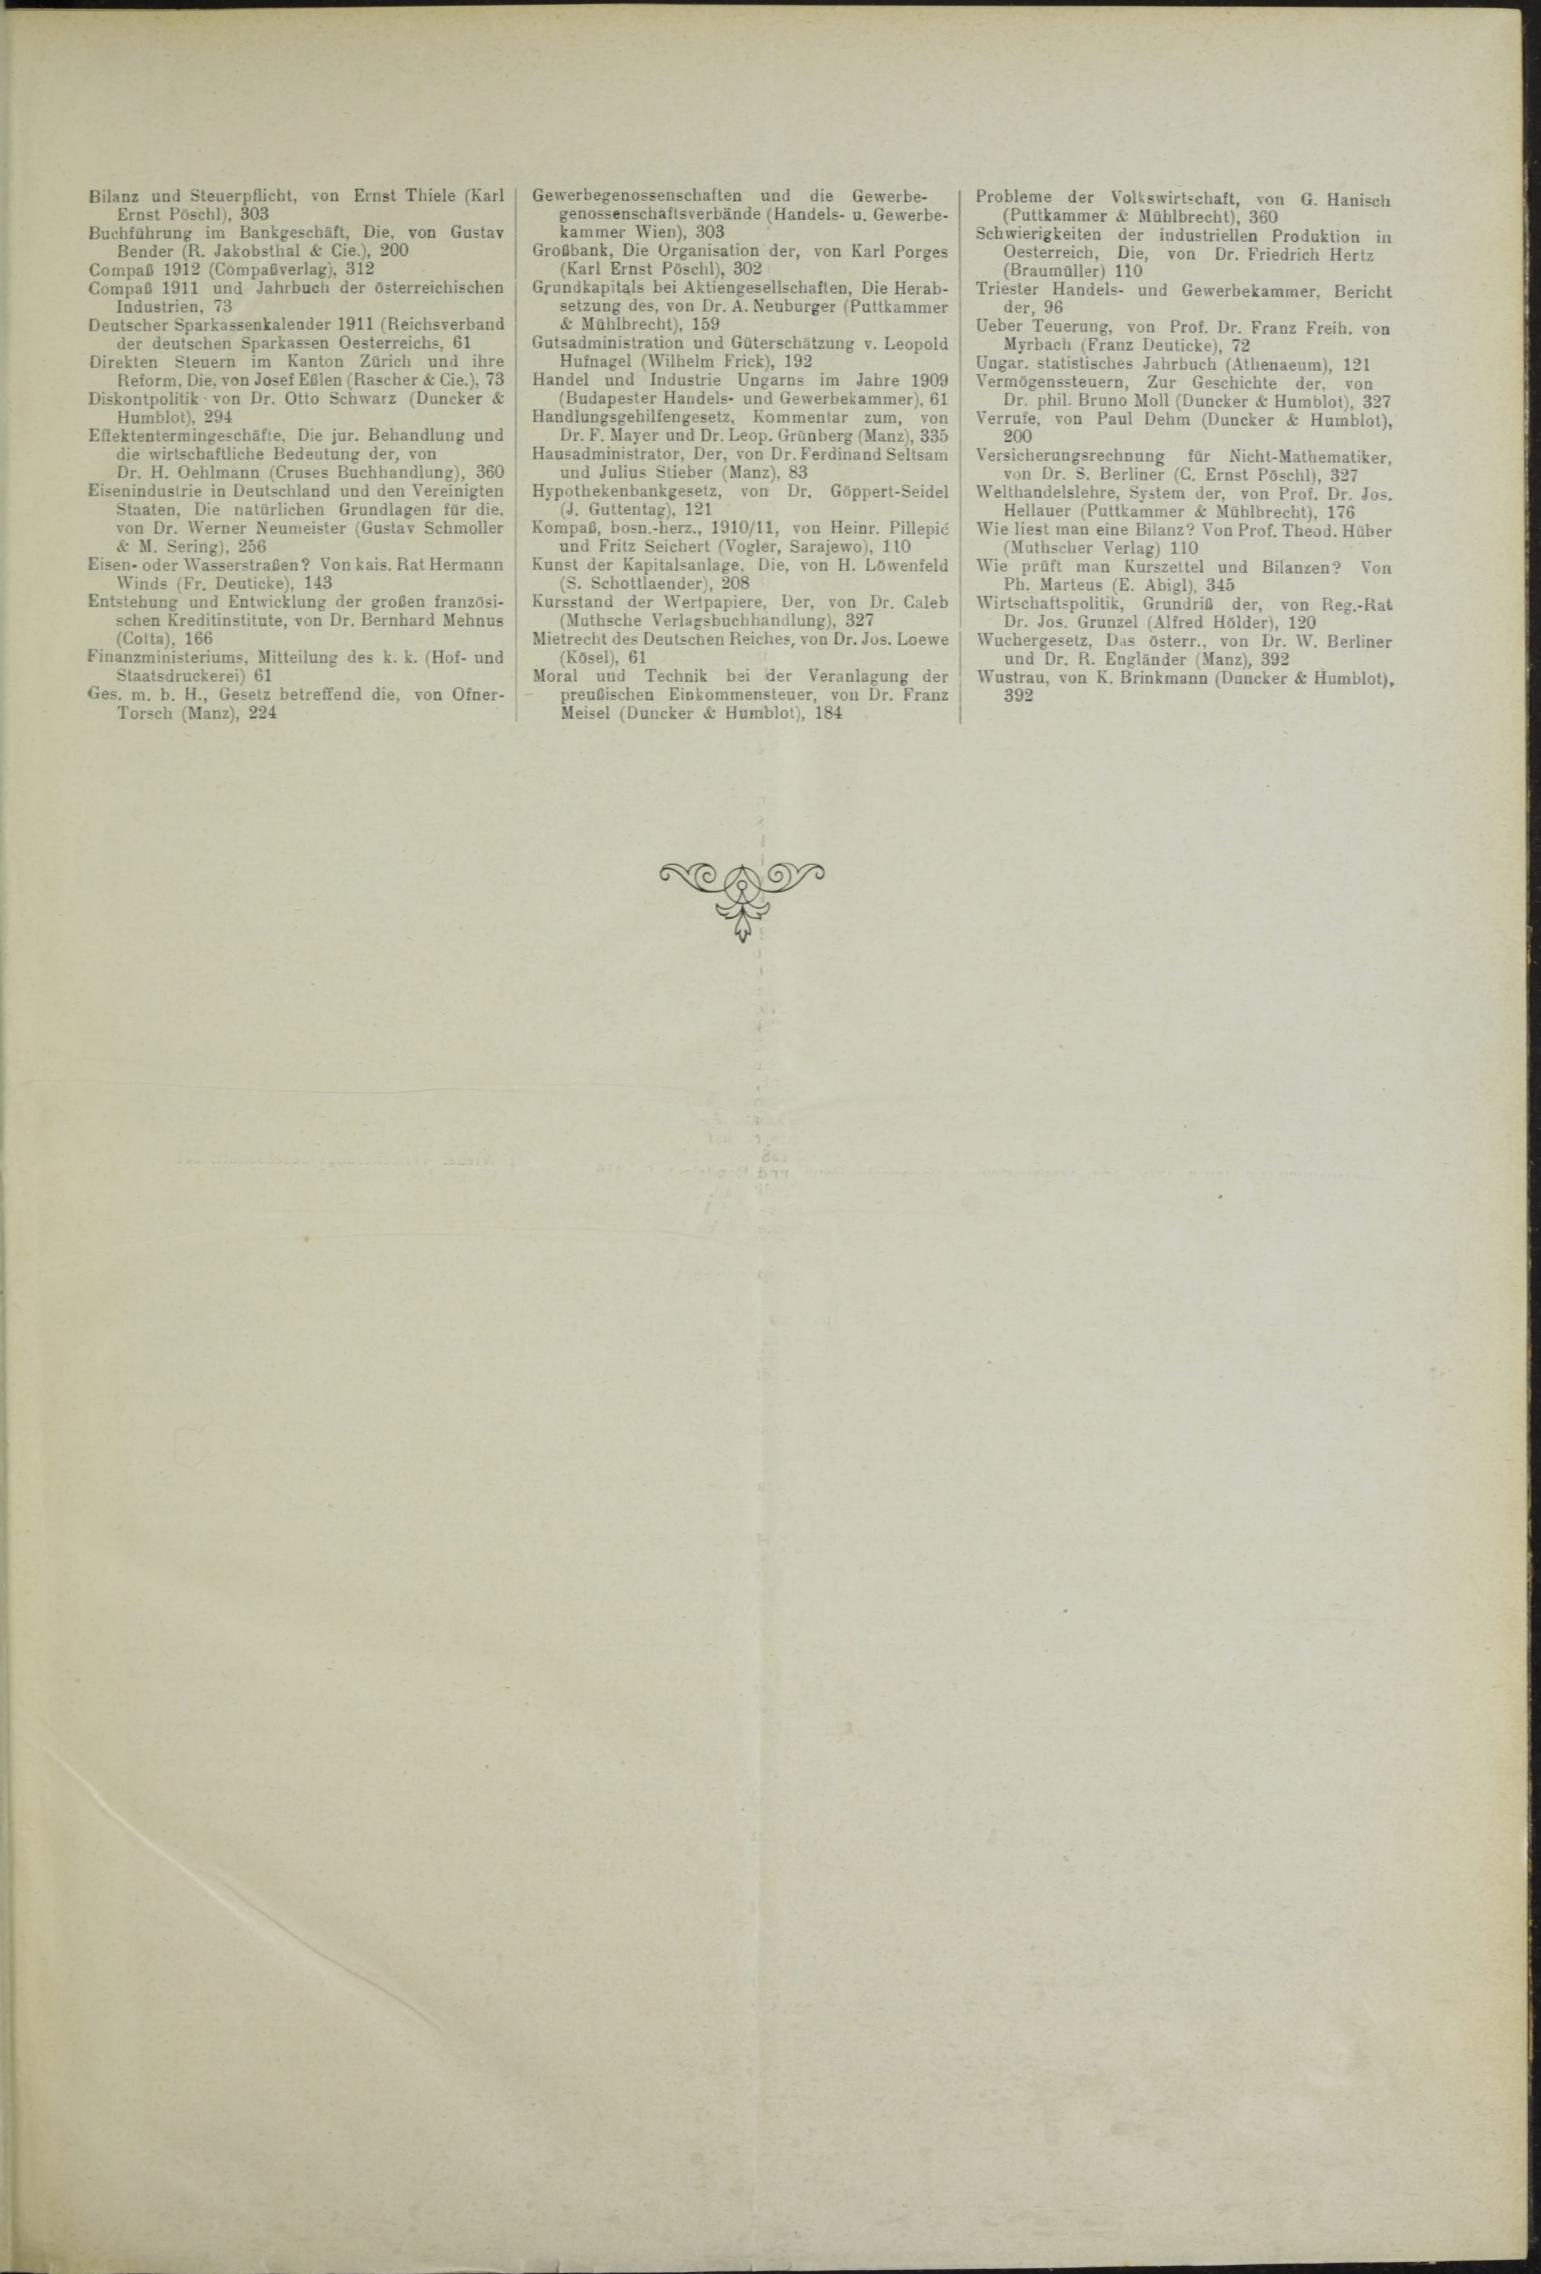 Der Tresor 01.04.1911 - Seite 13